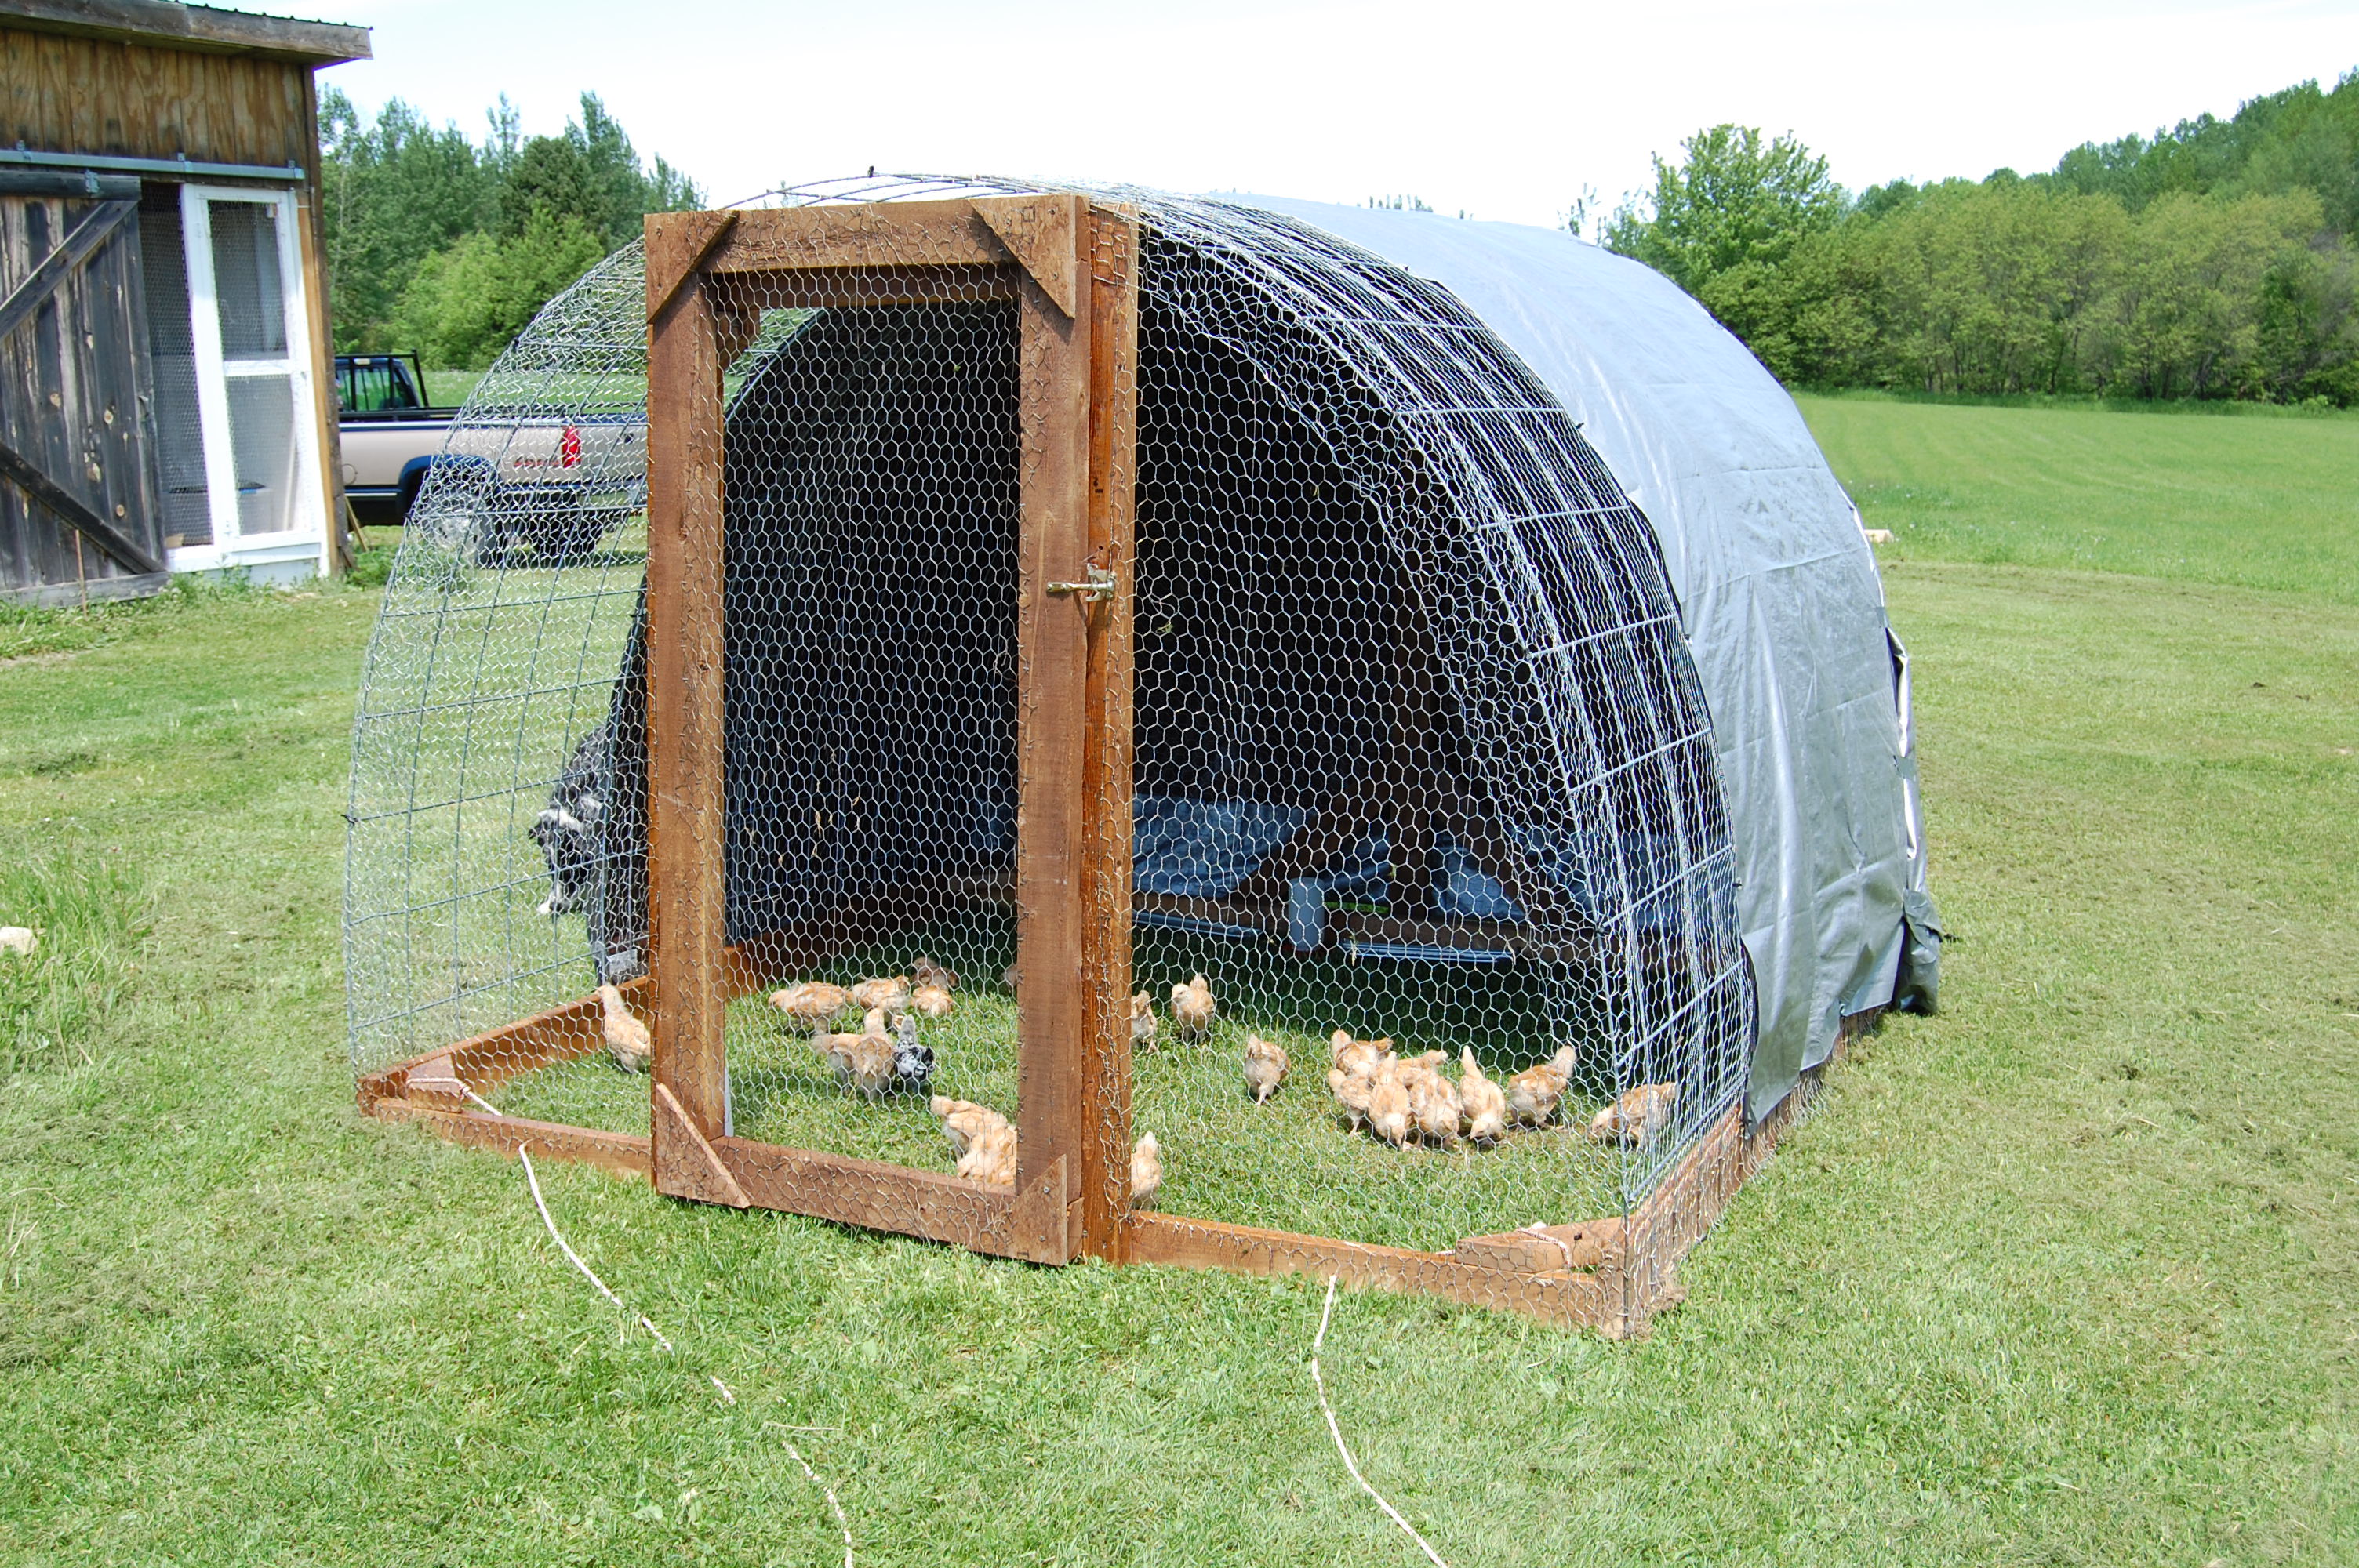 Chicken coop plans for 20 chickens Diy | Jum Chicken Coop